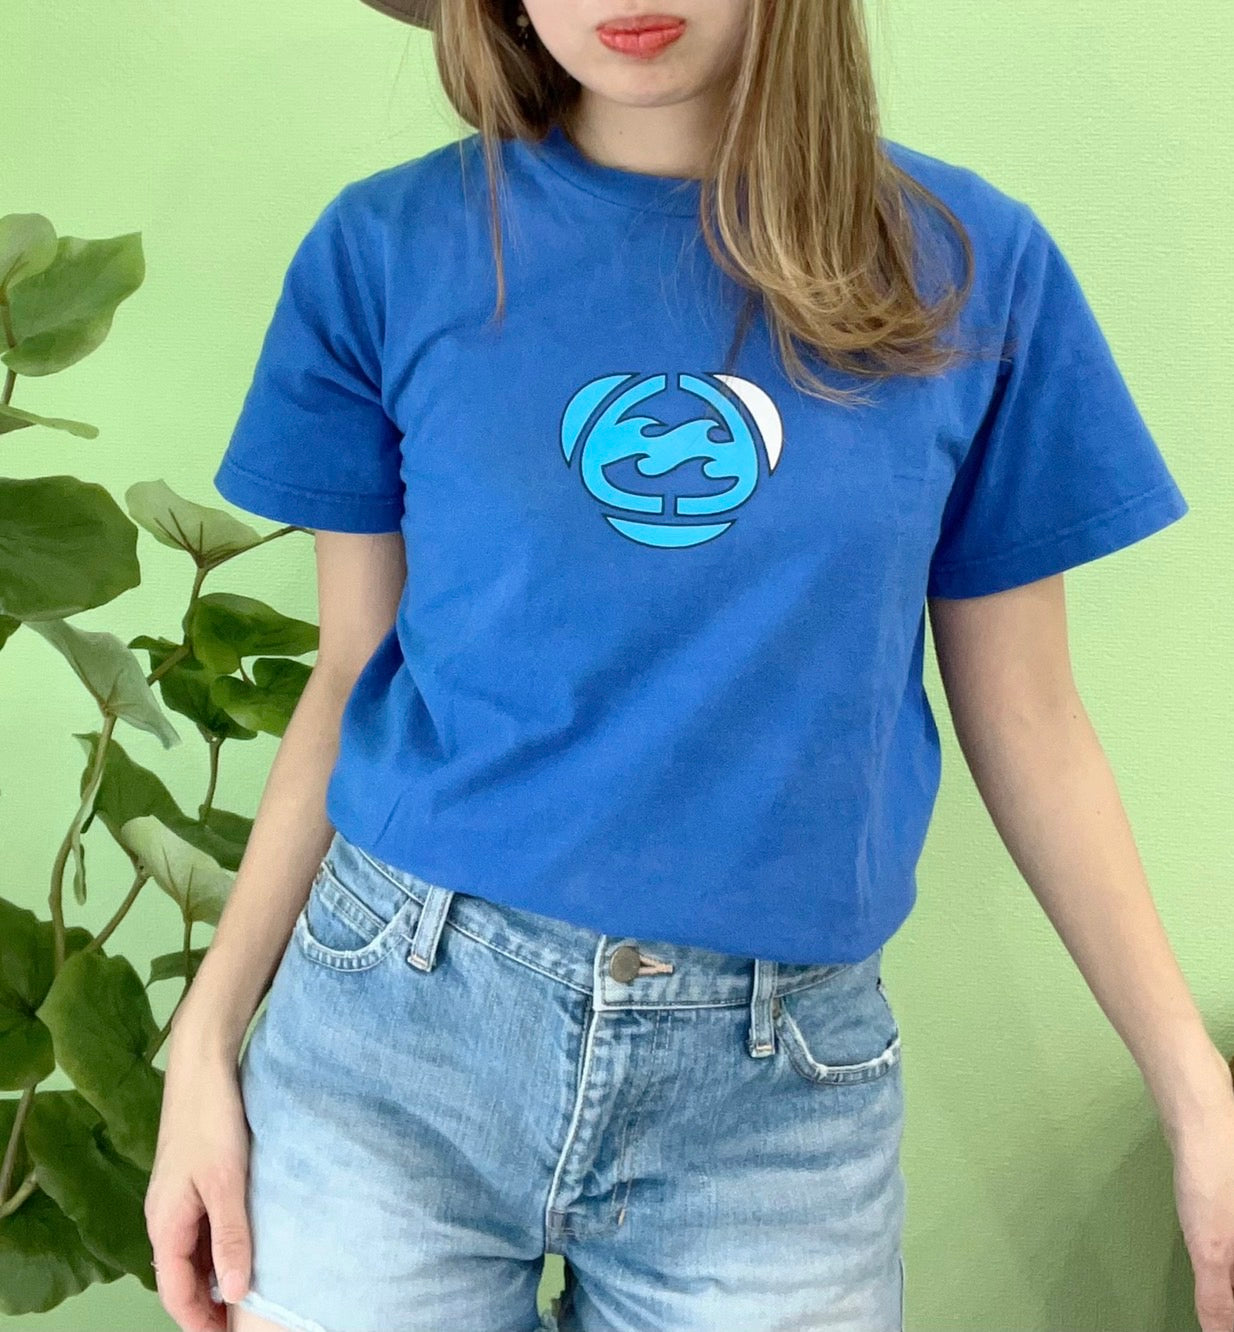 【Billabong】vintage 90’s Billabong  logo T-shirt blue (women's M)